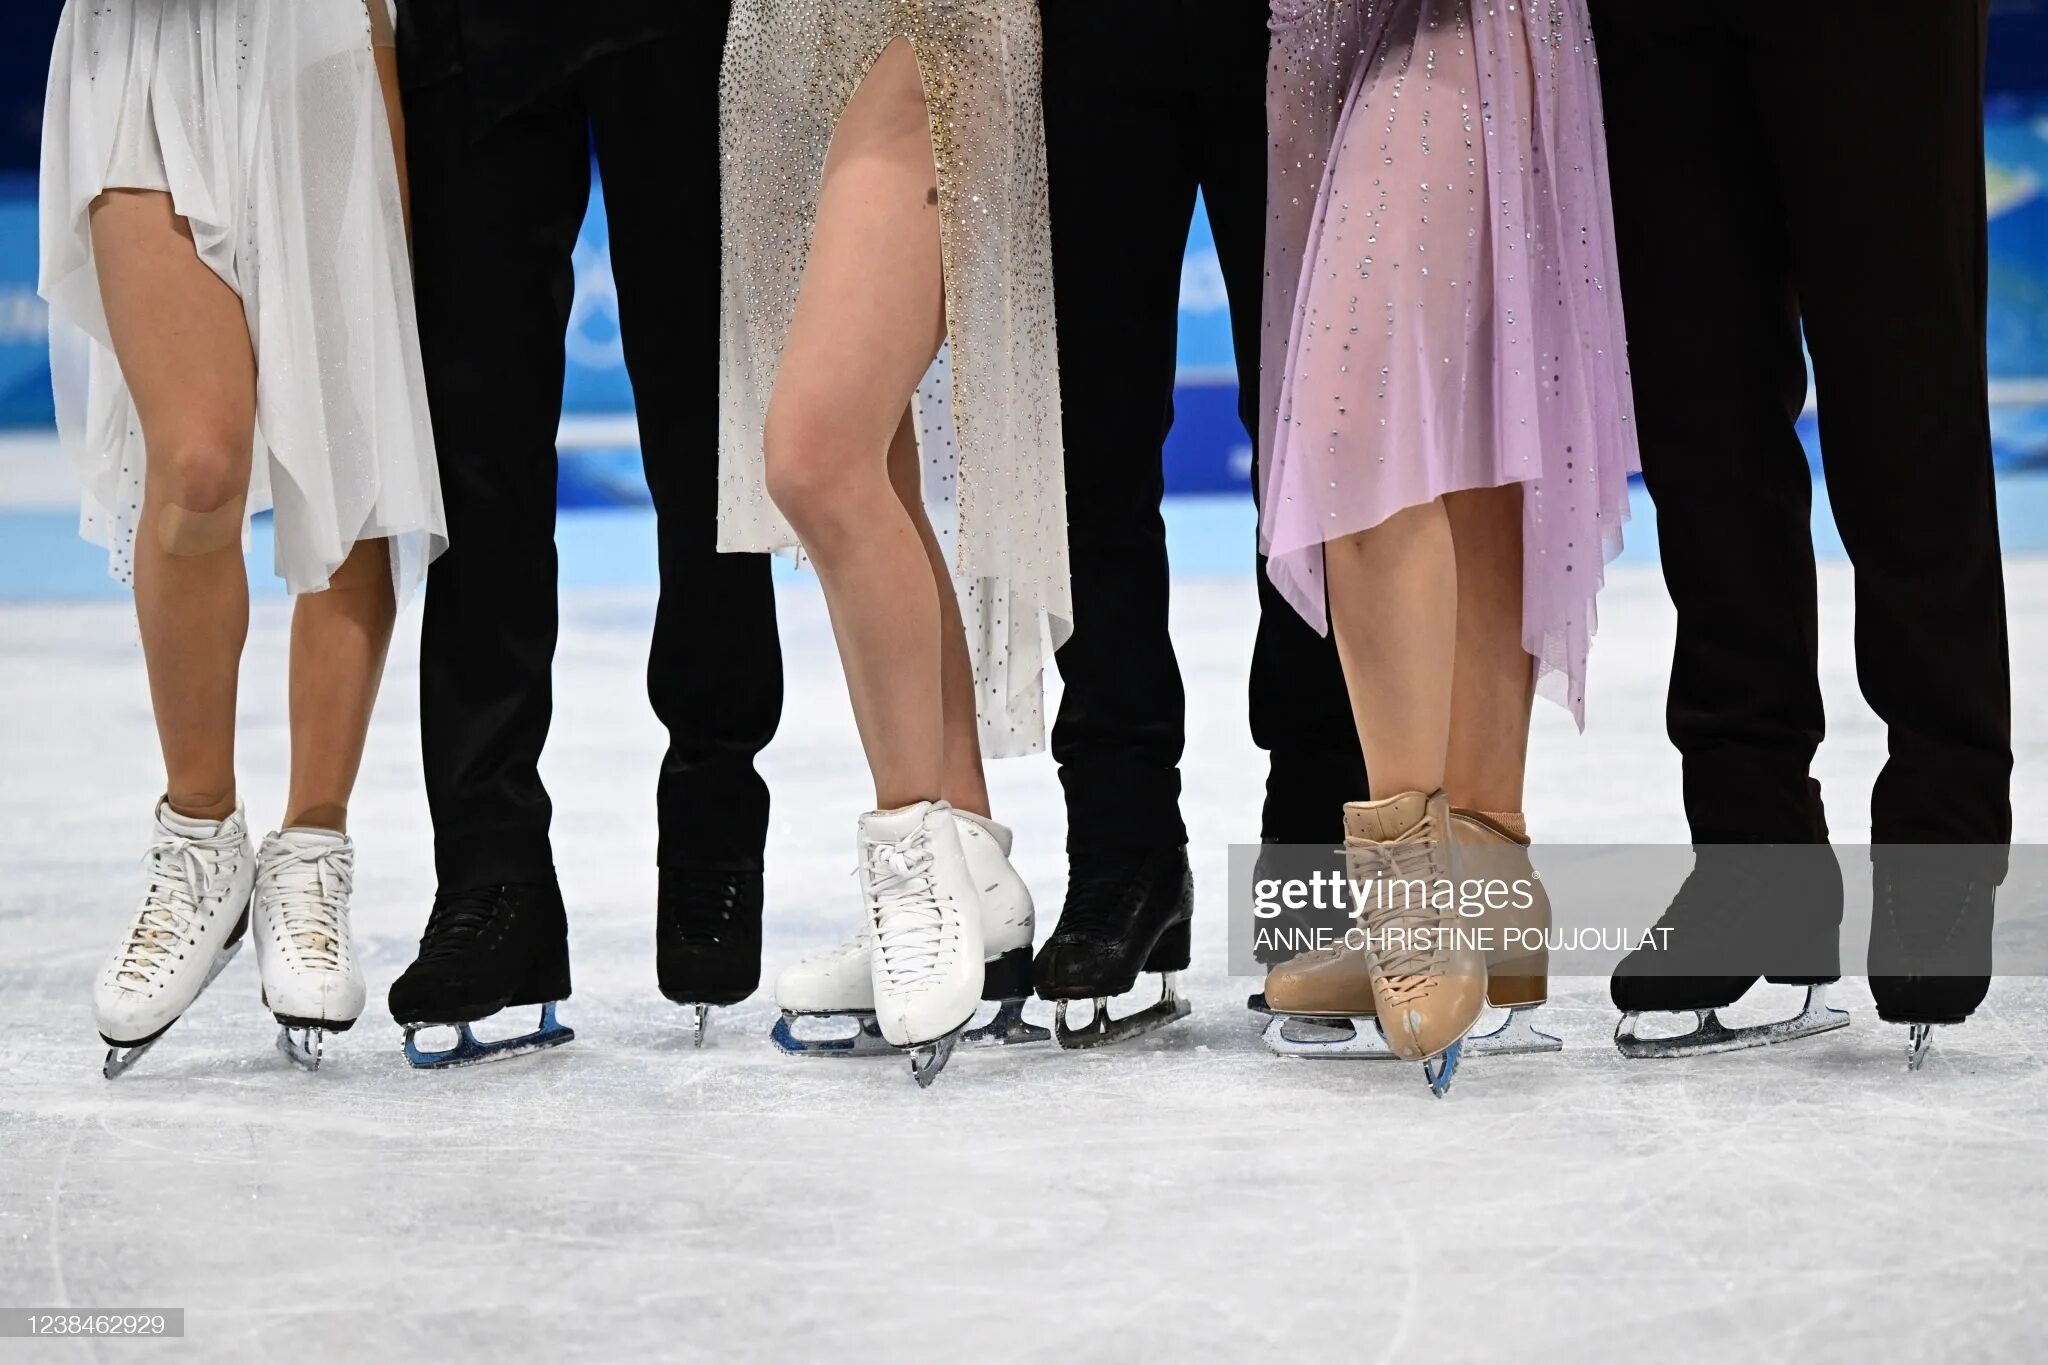 Танцы на льду результаты. Танцы на льду на Олимпийских играх 2022. Цветочная церемония фигурное катание. Загитова фото на церемонии. Загитова в прозрачном платье на церемонии.